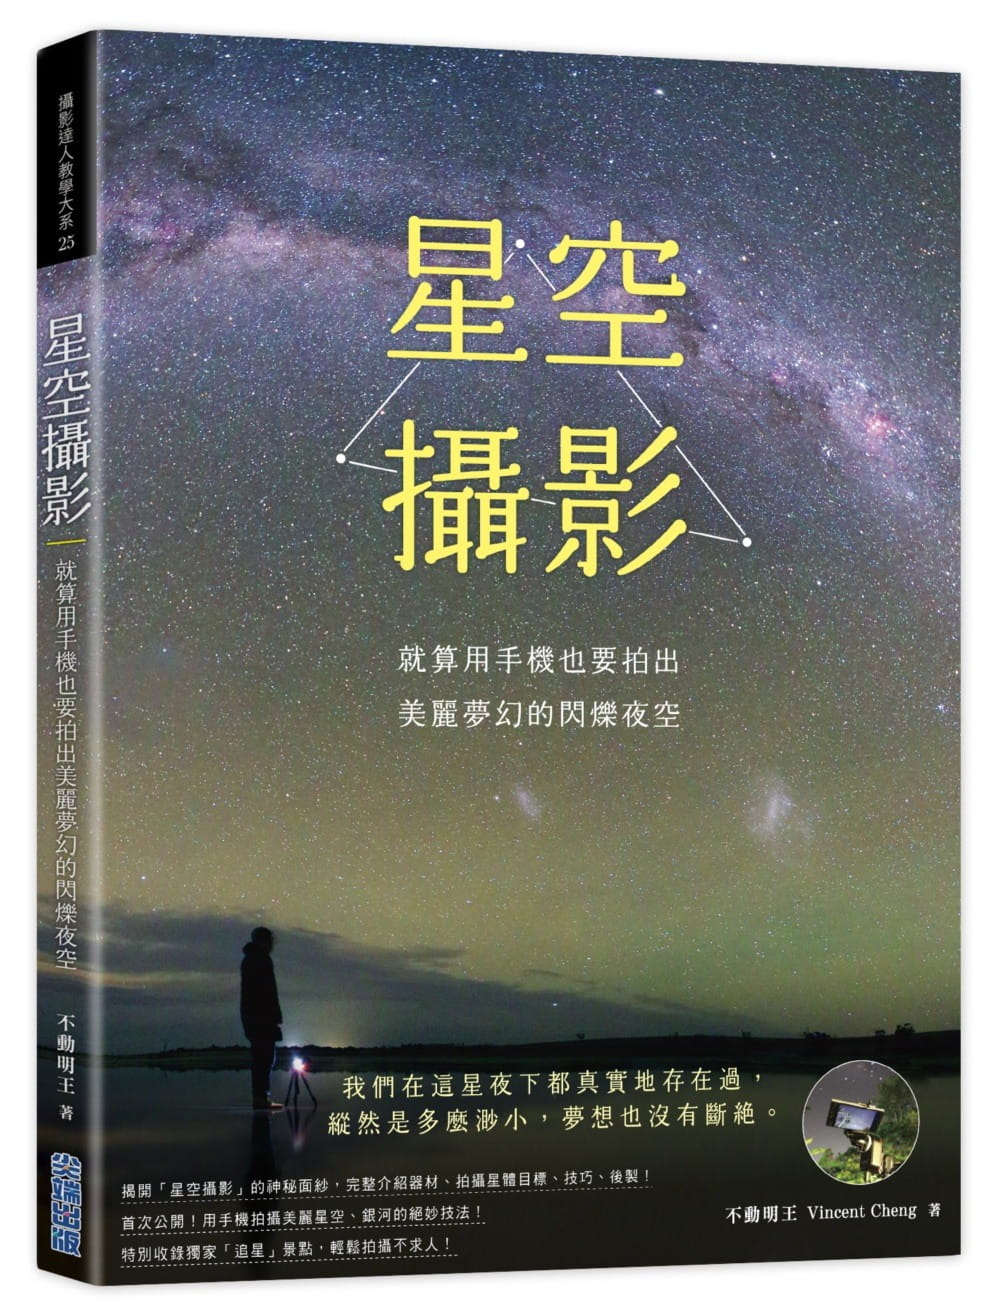 【现货】台版《星空摄影》就算用手机也要拍出美丽梦幻的闪烁夜空摄影拍摄教程书籍 尖端出版